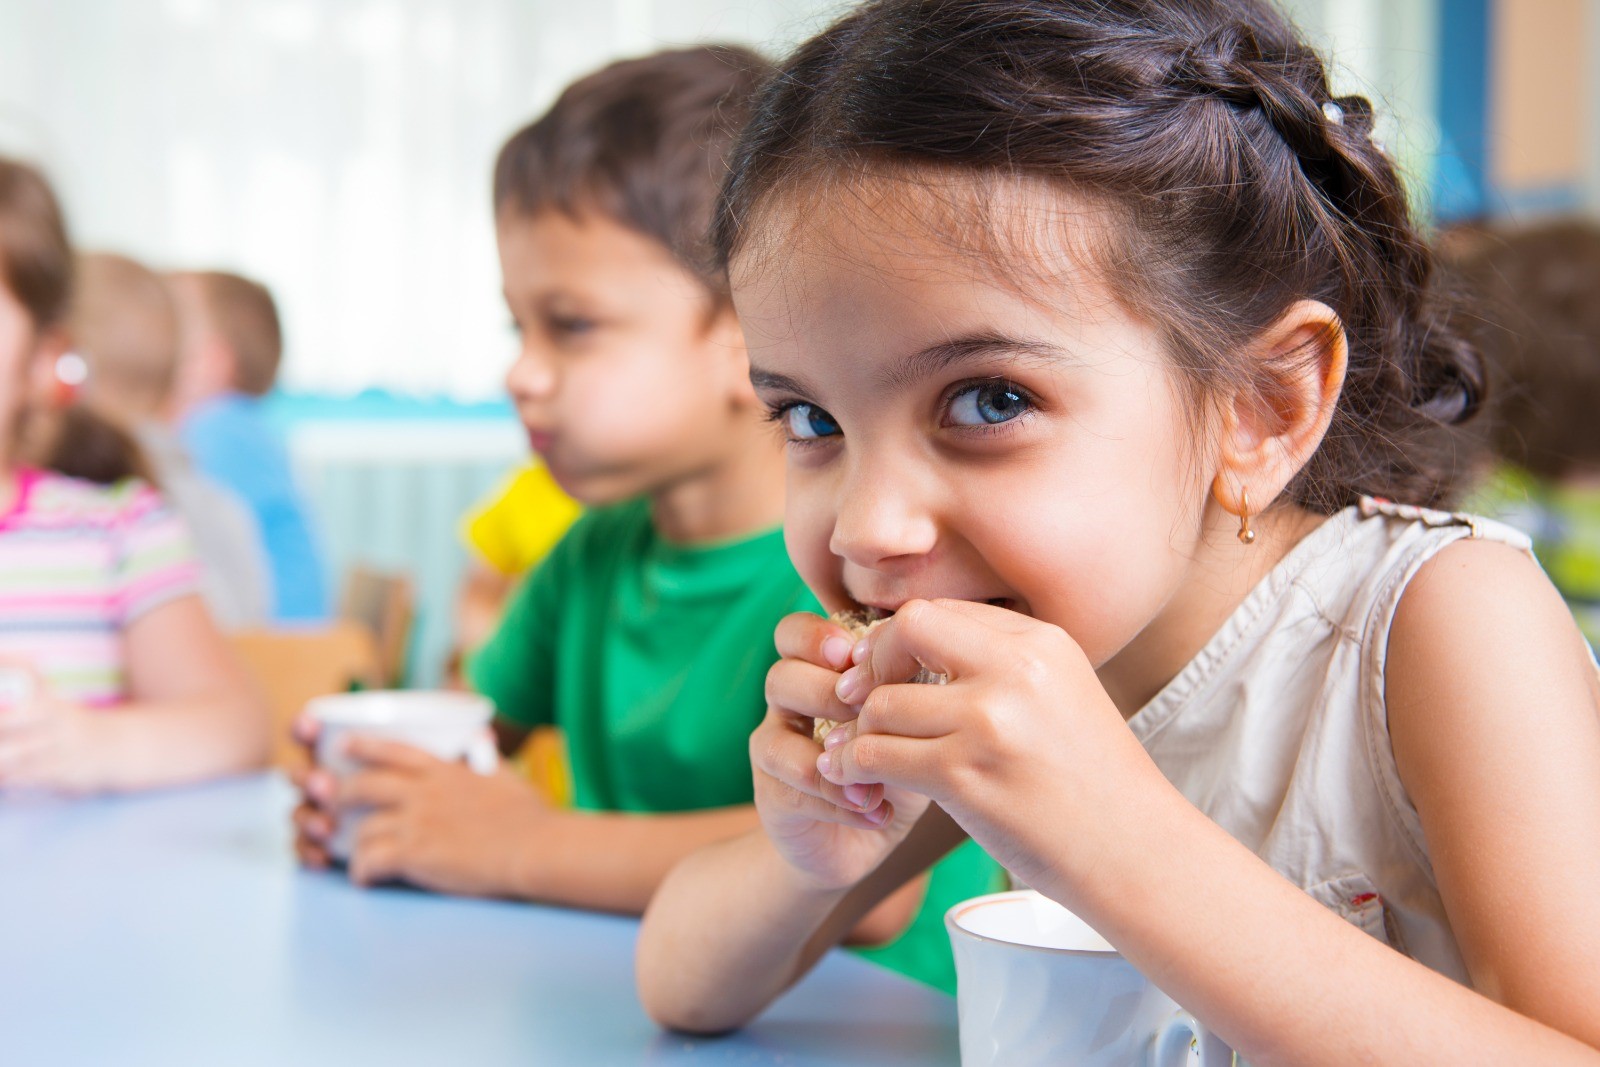 פוסט קורונה בצהרונים: מאמץ להשבת הילדים לשגרה תזונתית - חברת לאנץ' טיים